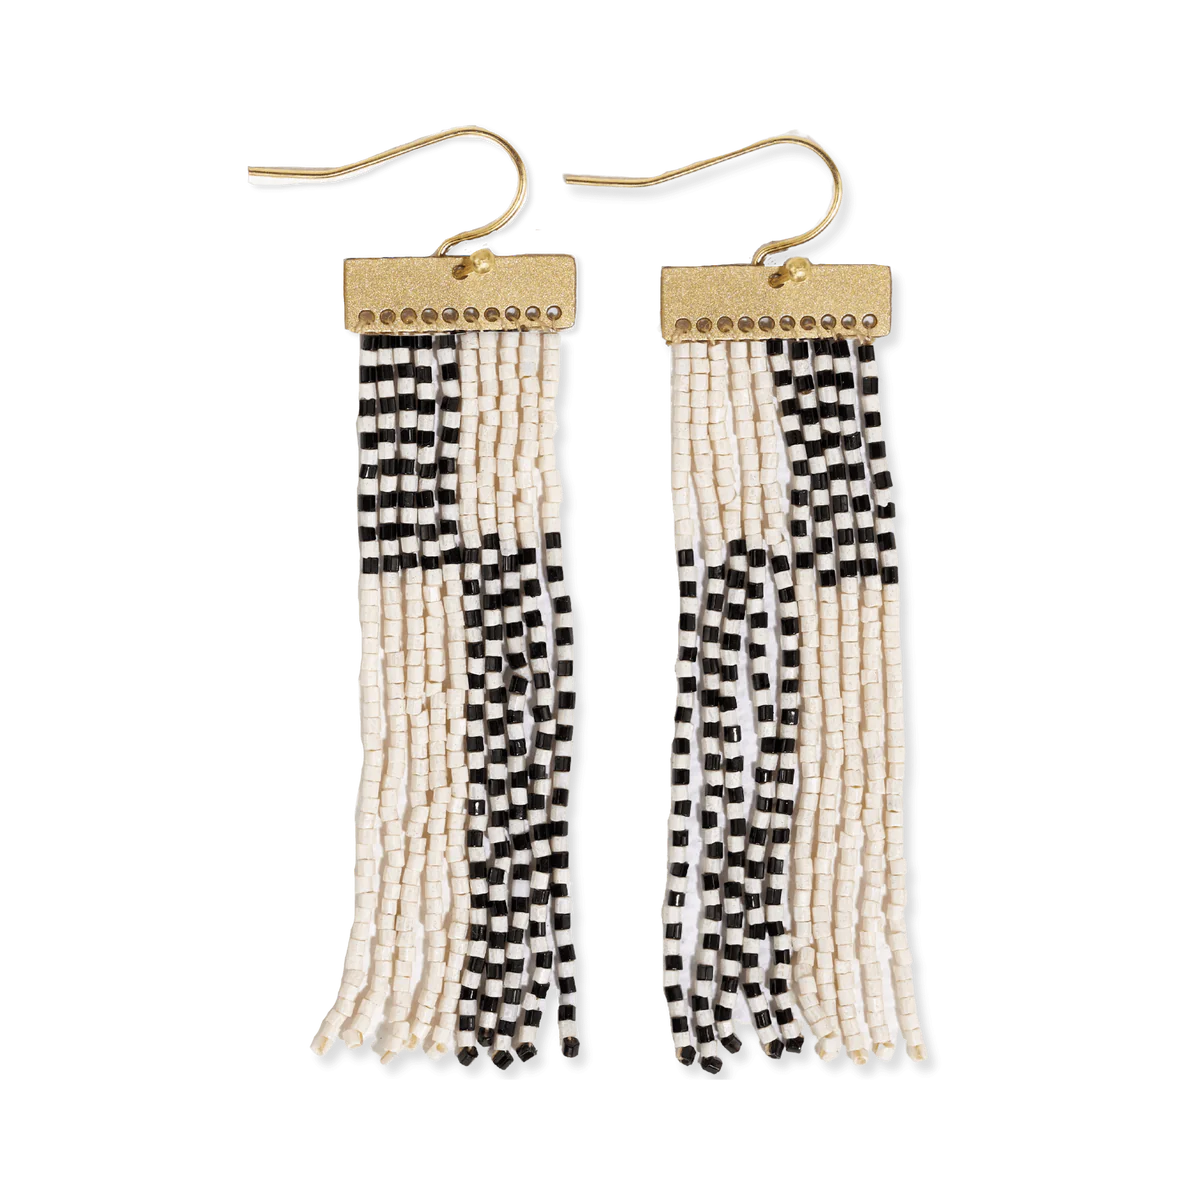 Lana Rectangle Hanger Colorblocks With Stripes Beaded Fringe Earrings Earrings Black